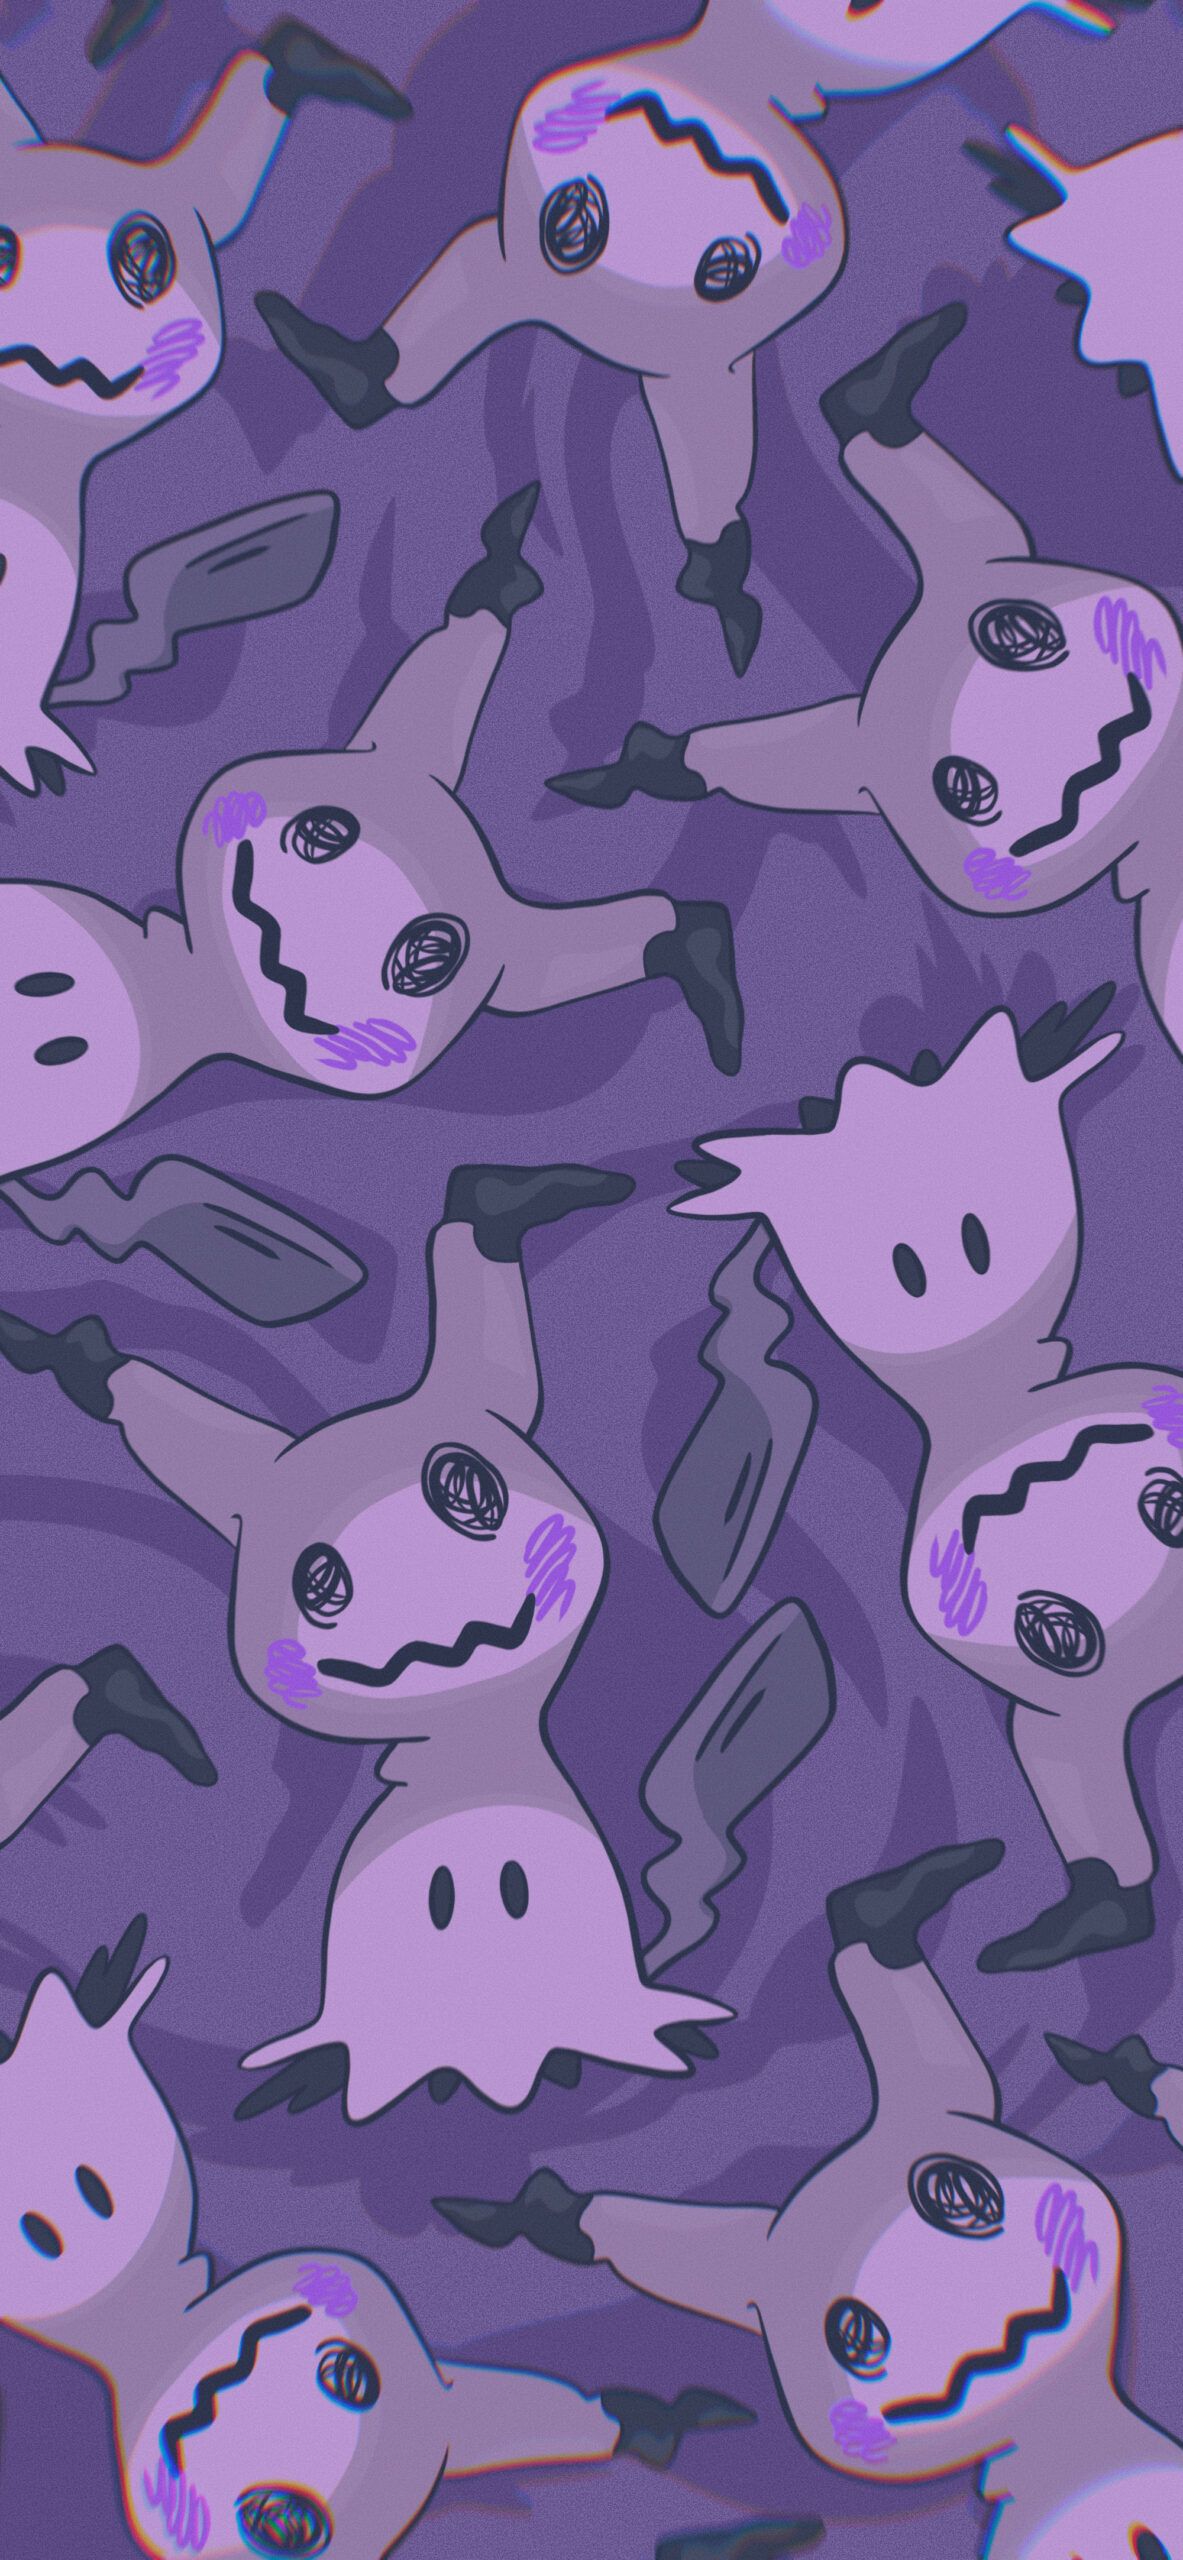 Pokémon Mimikyu Purple Wallpaper. Cool pokemon wallpaper, Cute pokemon wallpaper, Pokemon android wallpaper